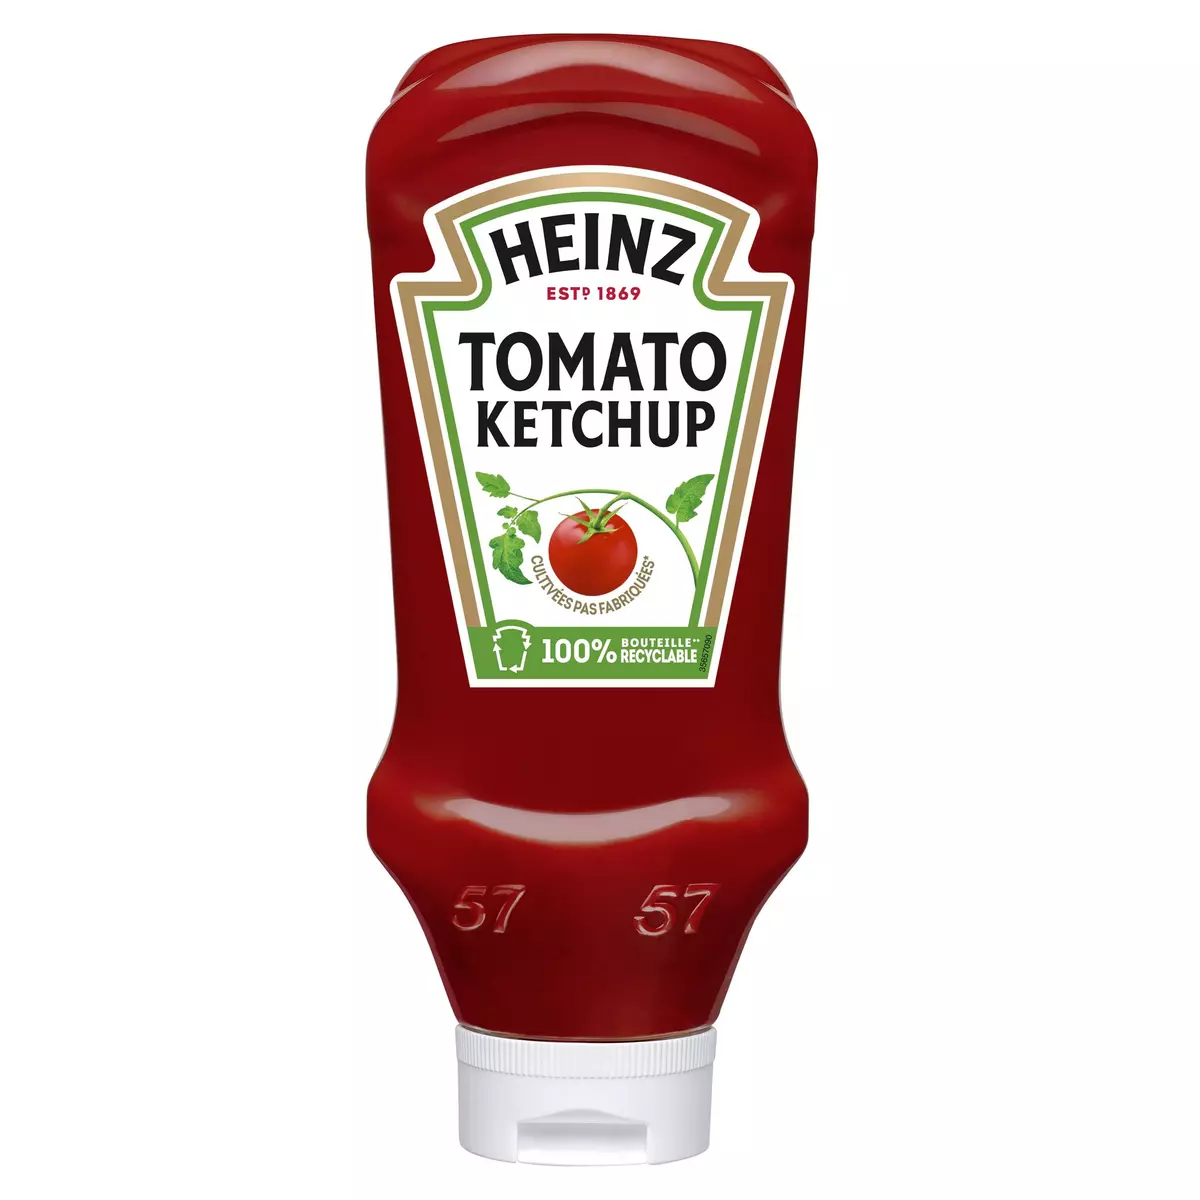 HEINZ Tomato Ketchup flacon souple top down 910g